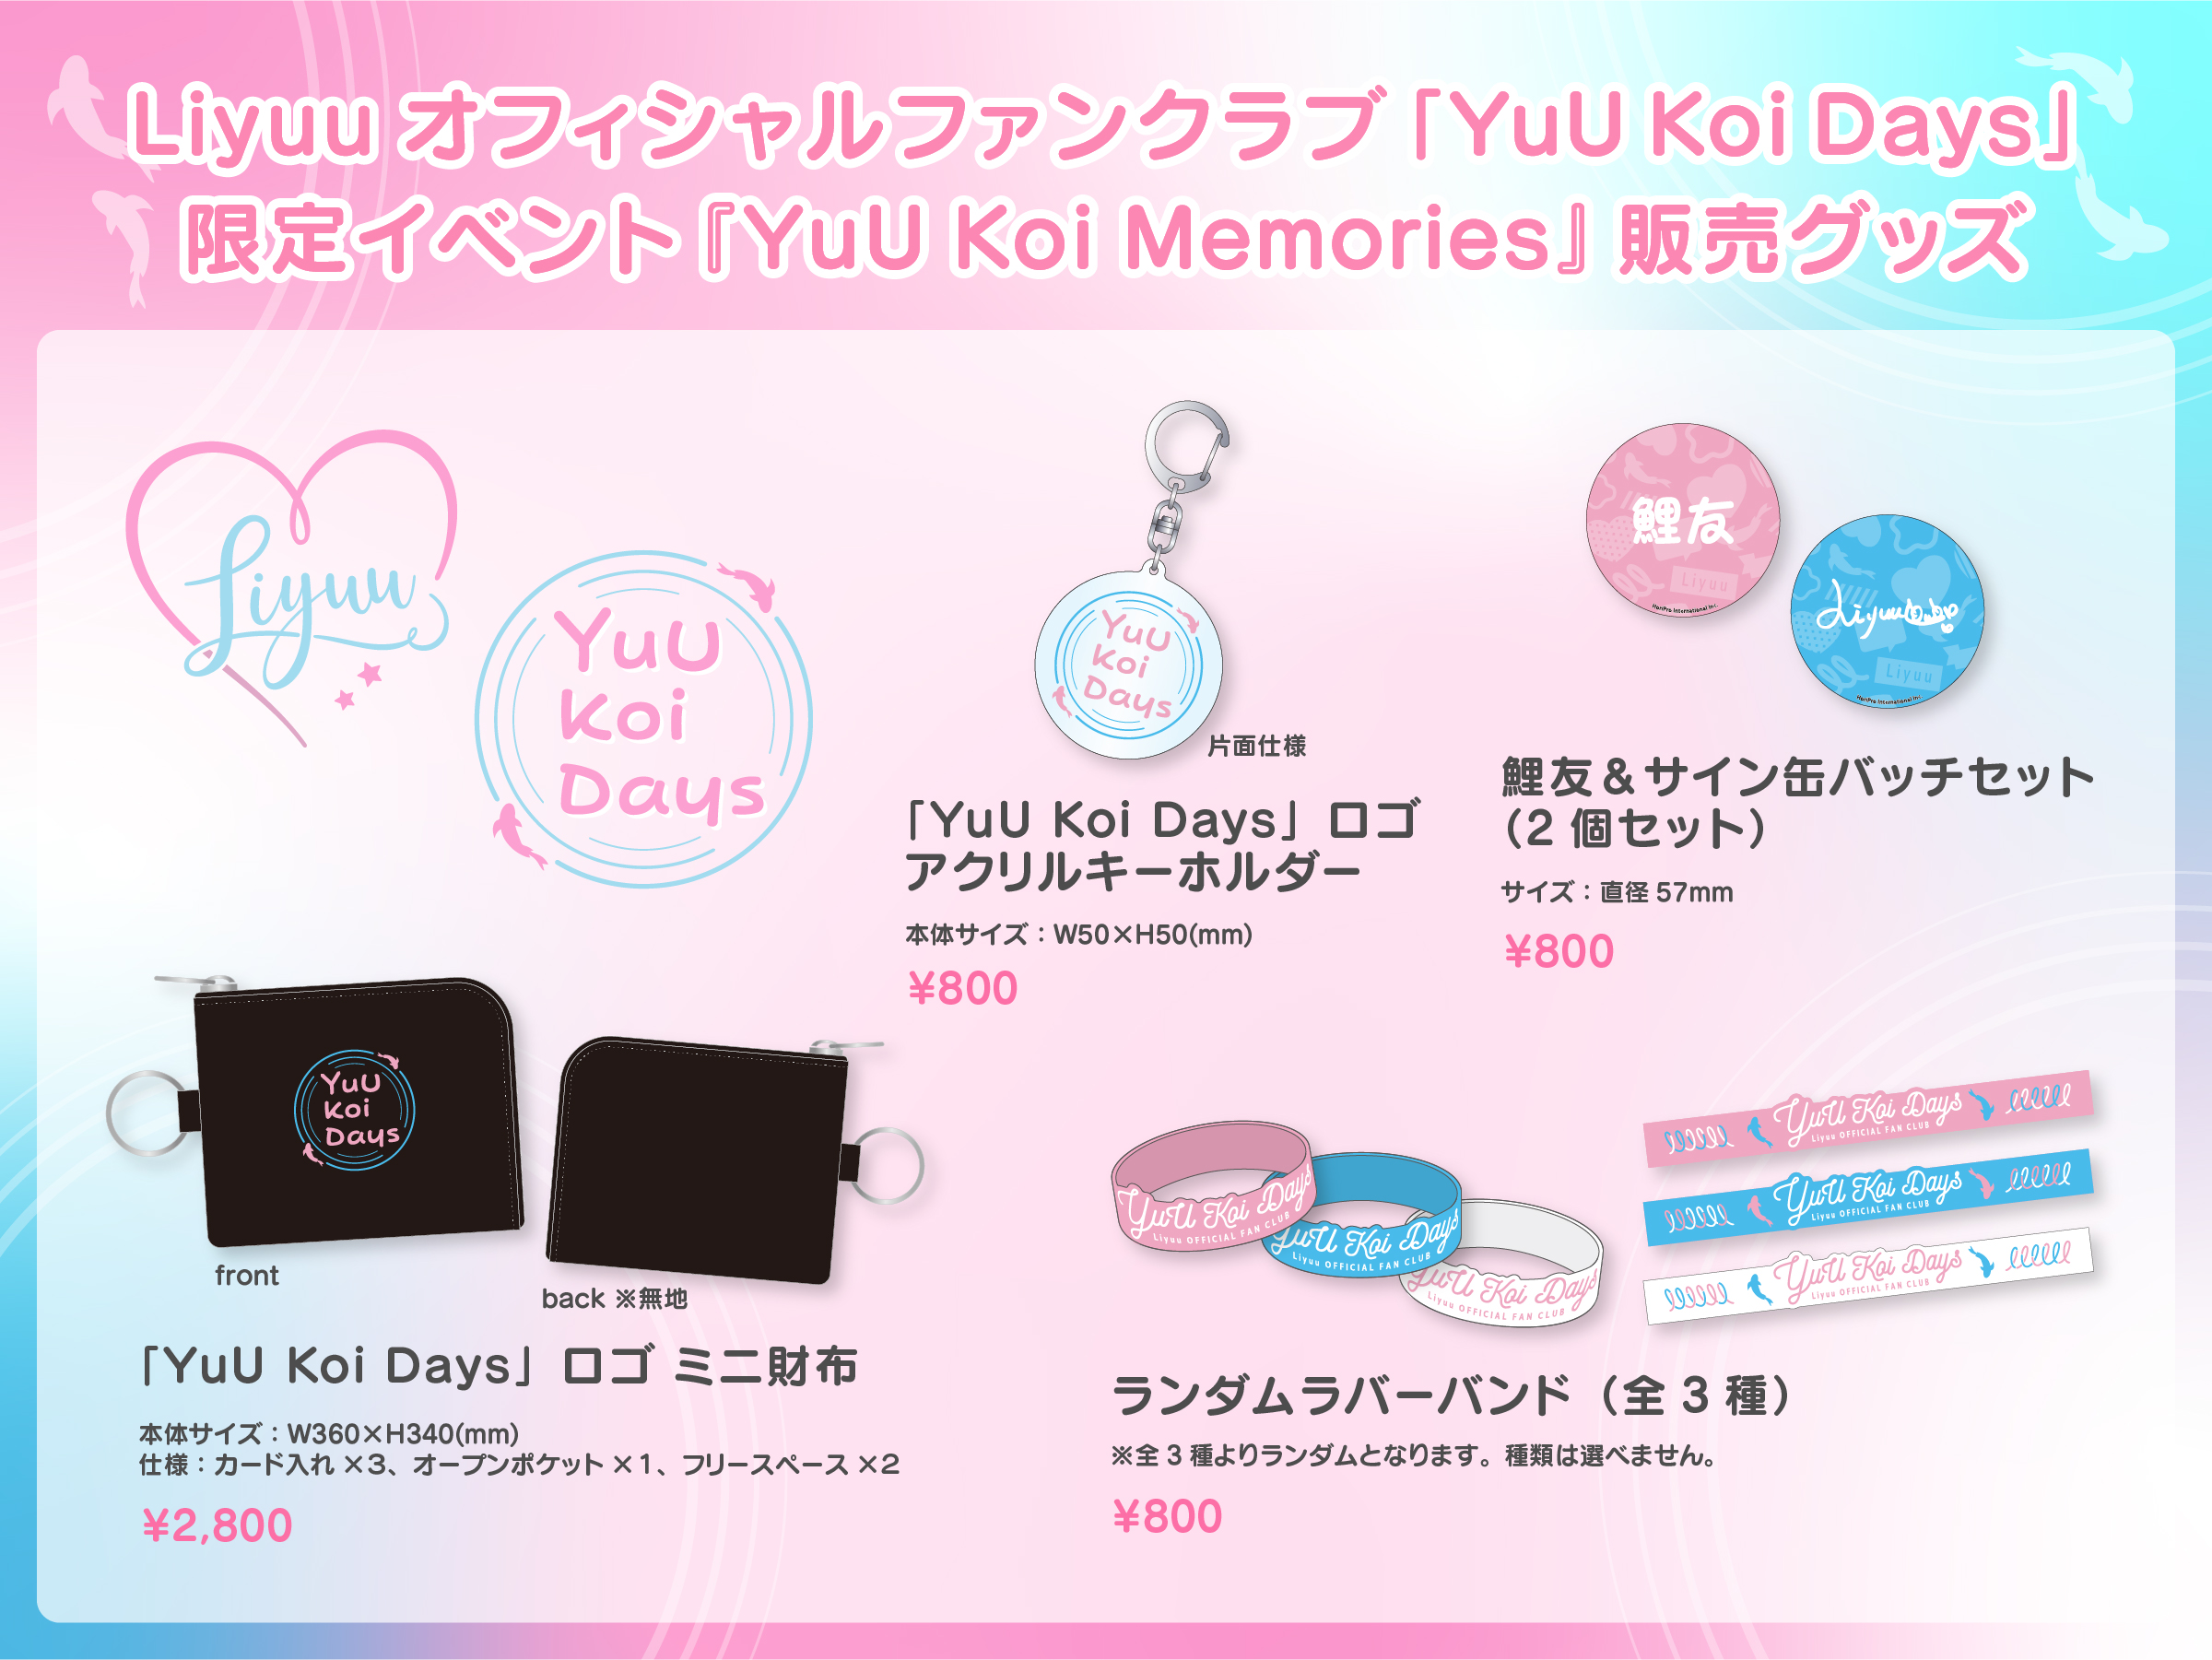 Liyuuオフィシャルファンクラブ「YuU Koi Days」限定イベント『YuU Koi 